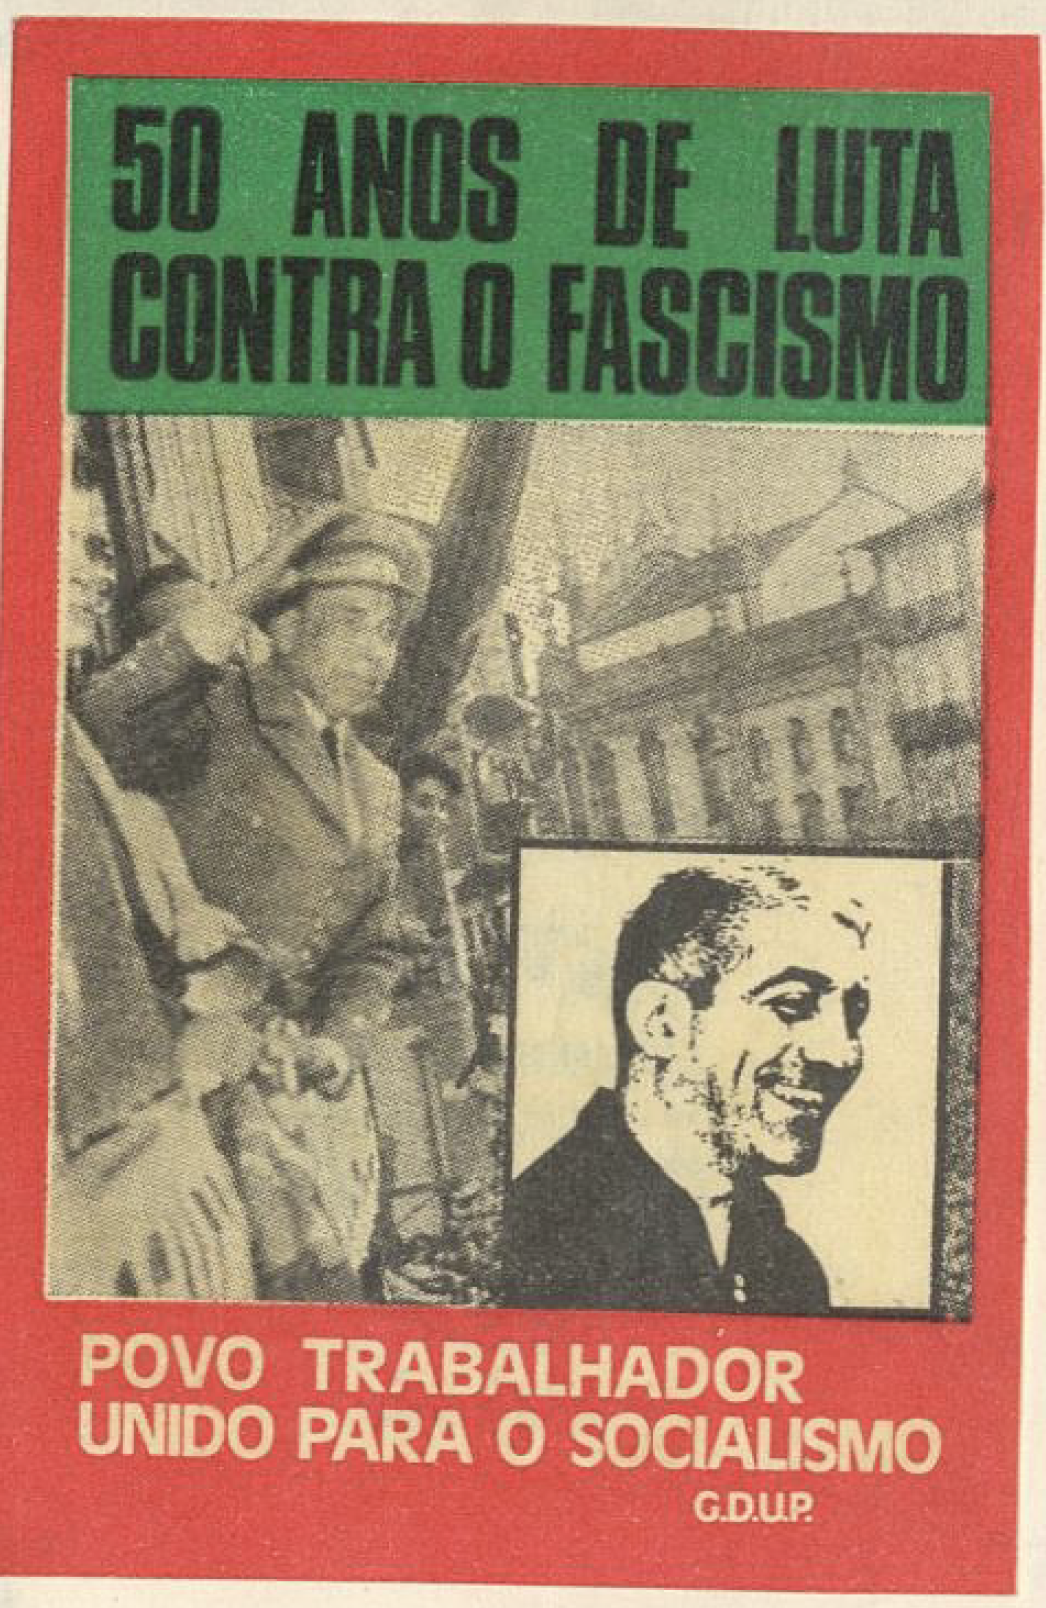 50 Anos de Luta Contra o Fascismo